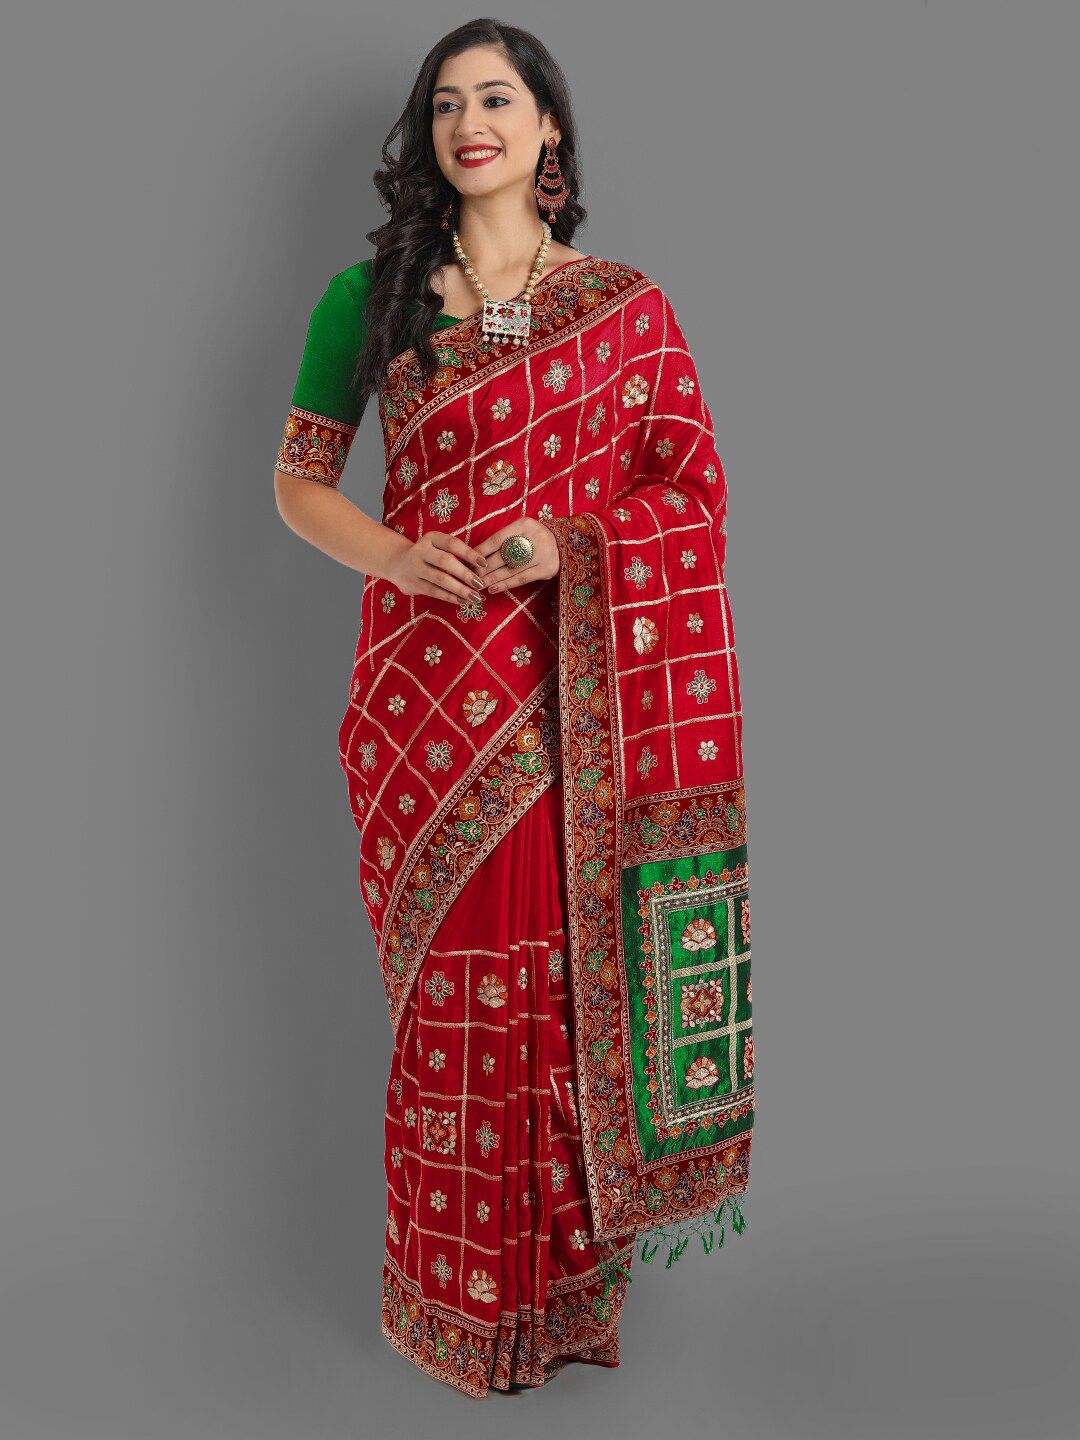 ASPORA Women Red & Green Ethnic Motifs Pure Silk Heavy Work Maheshwari Saree Price in India